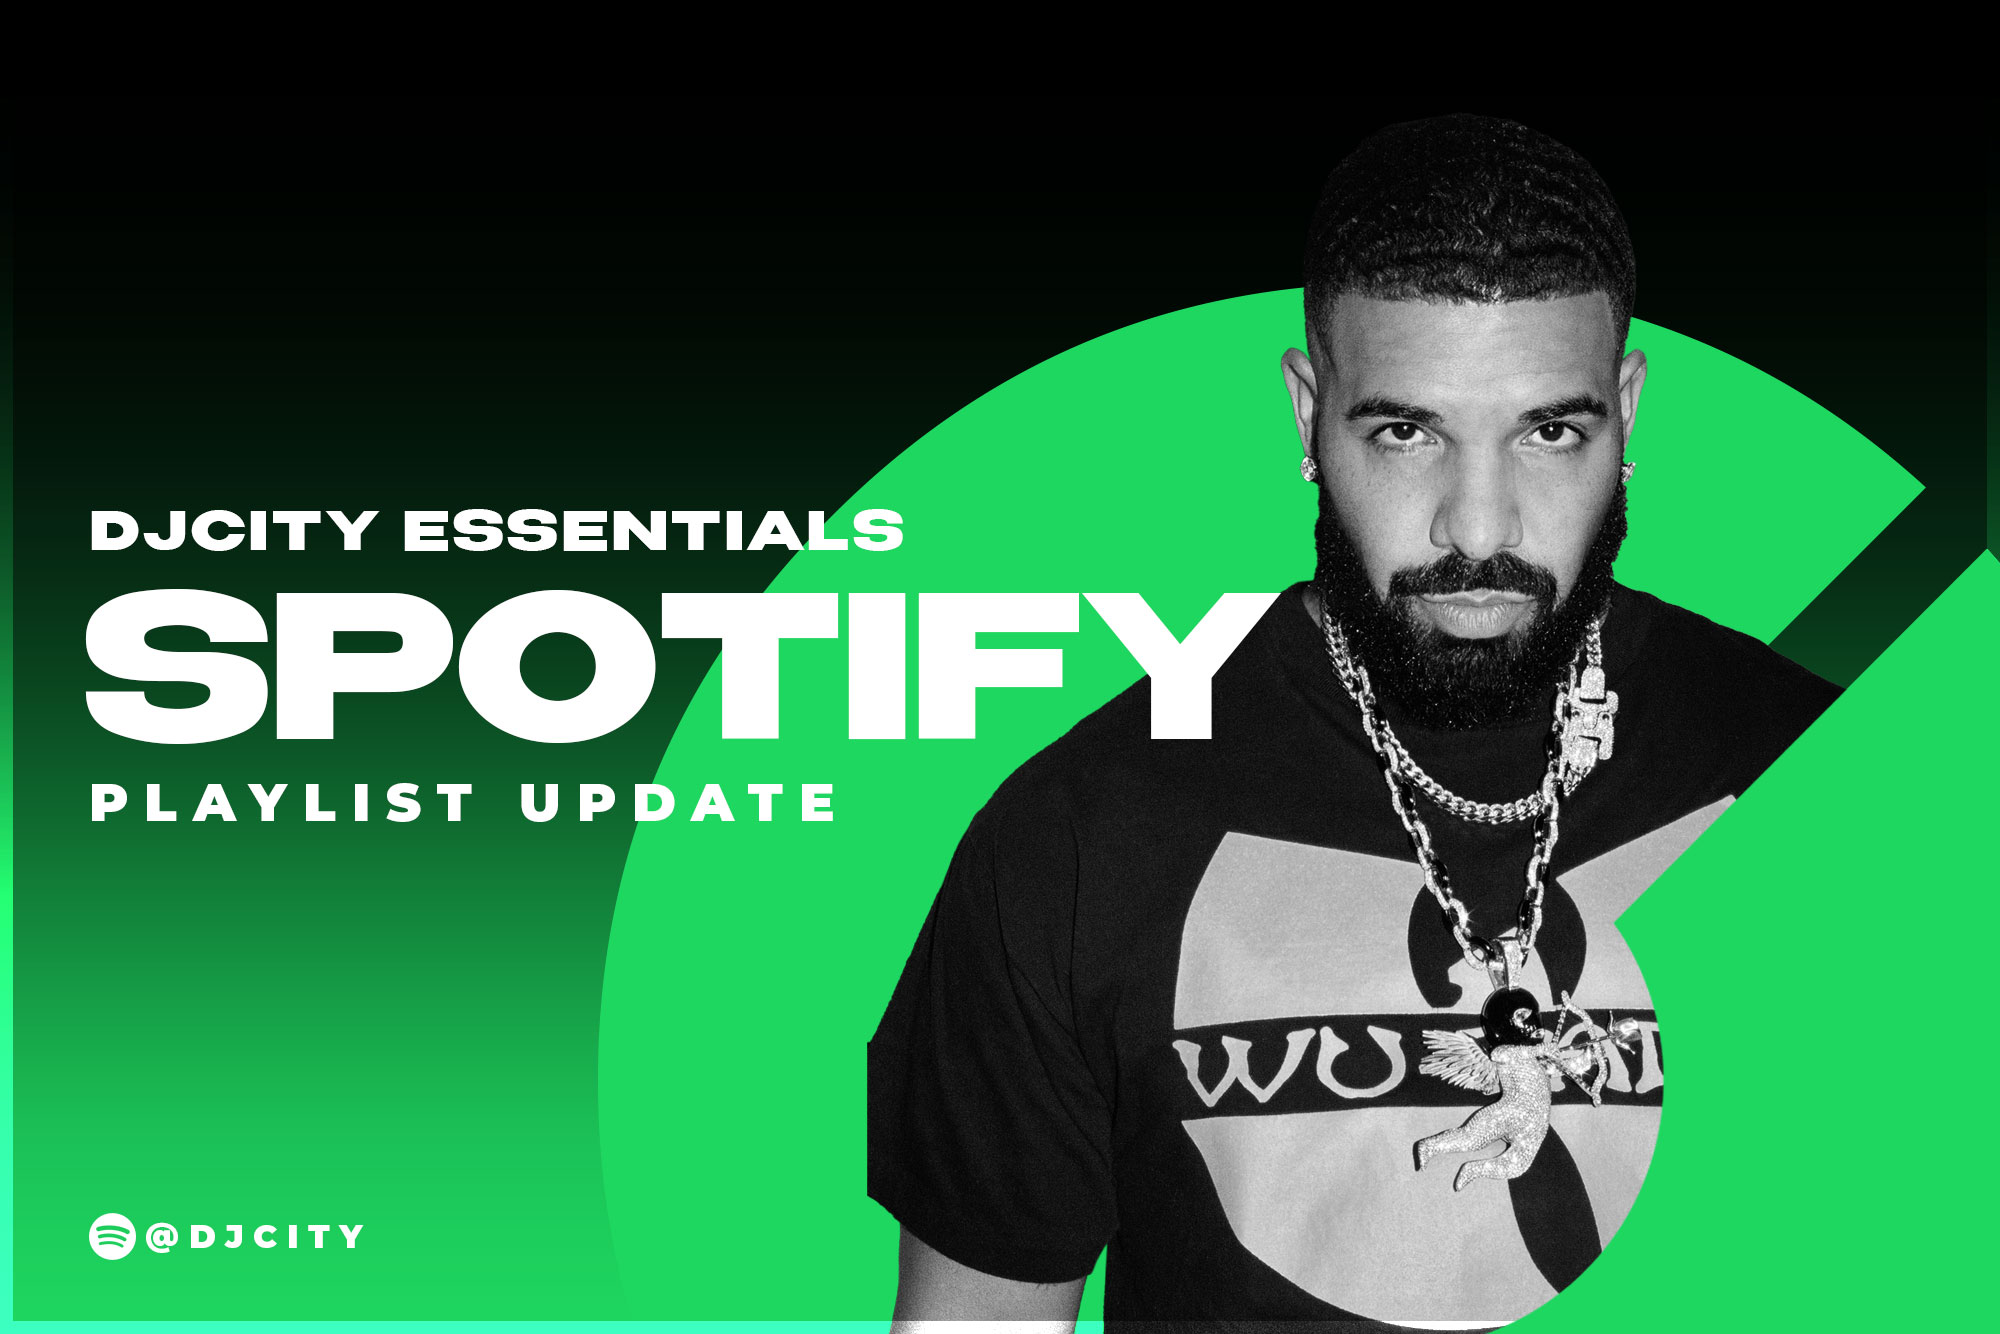 DJcity’s Spotify Playlist Update: Mar. 9